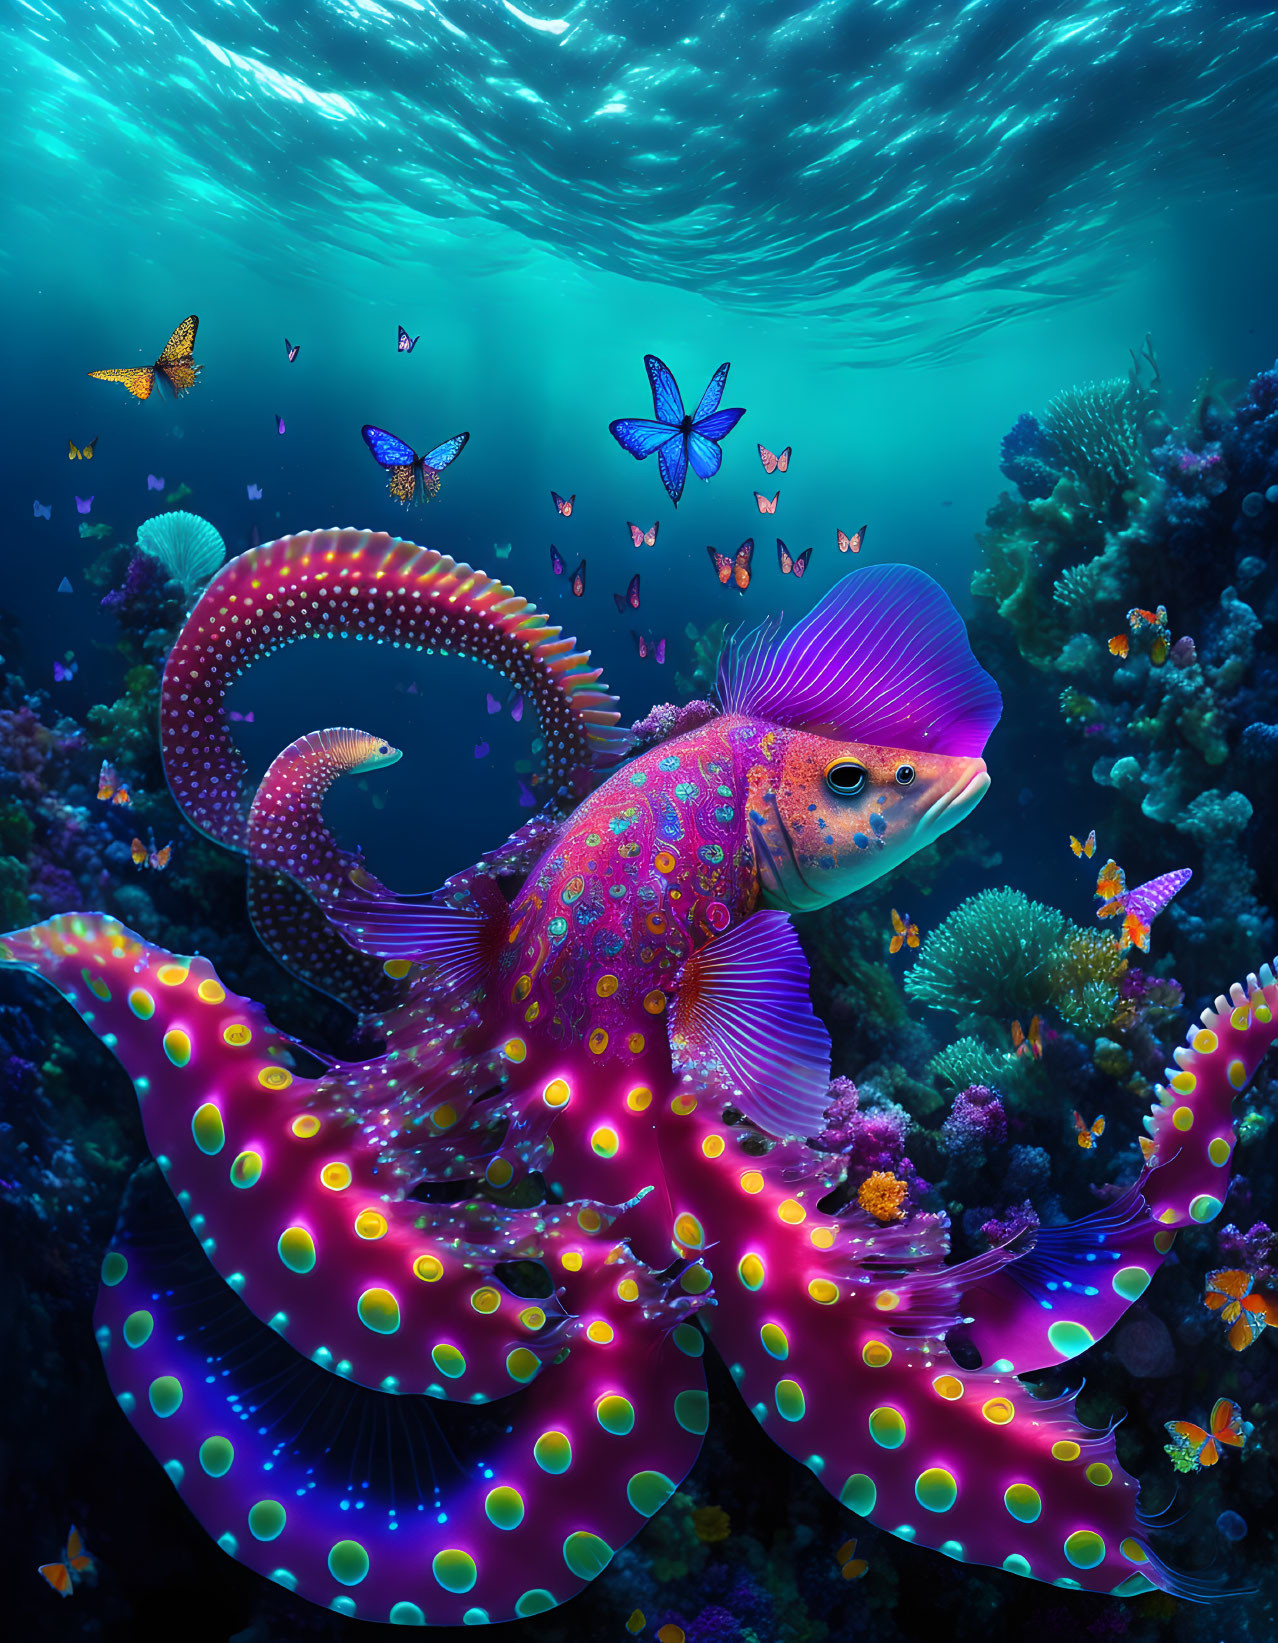 Hybrid sea creature